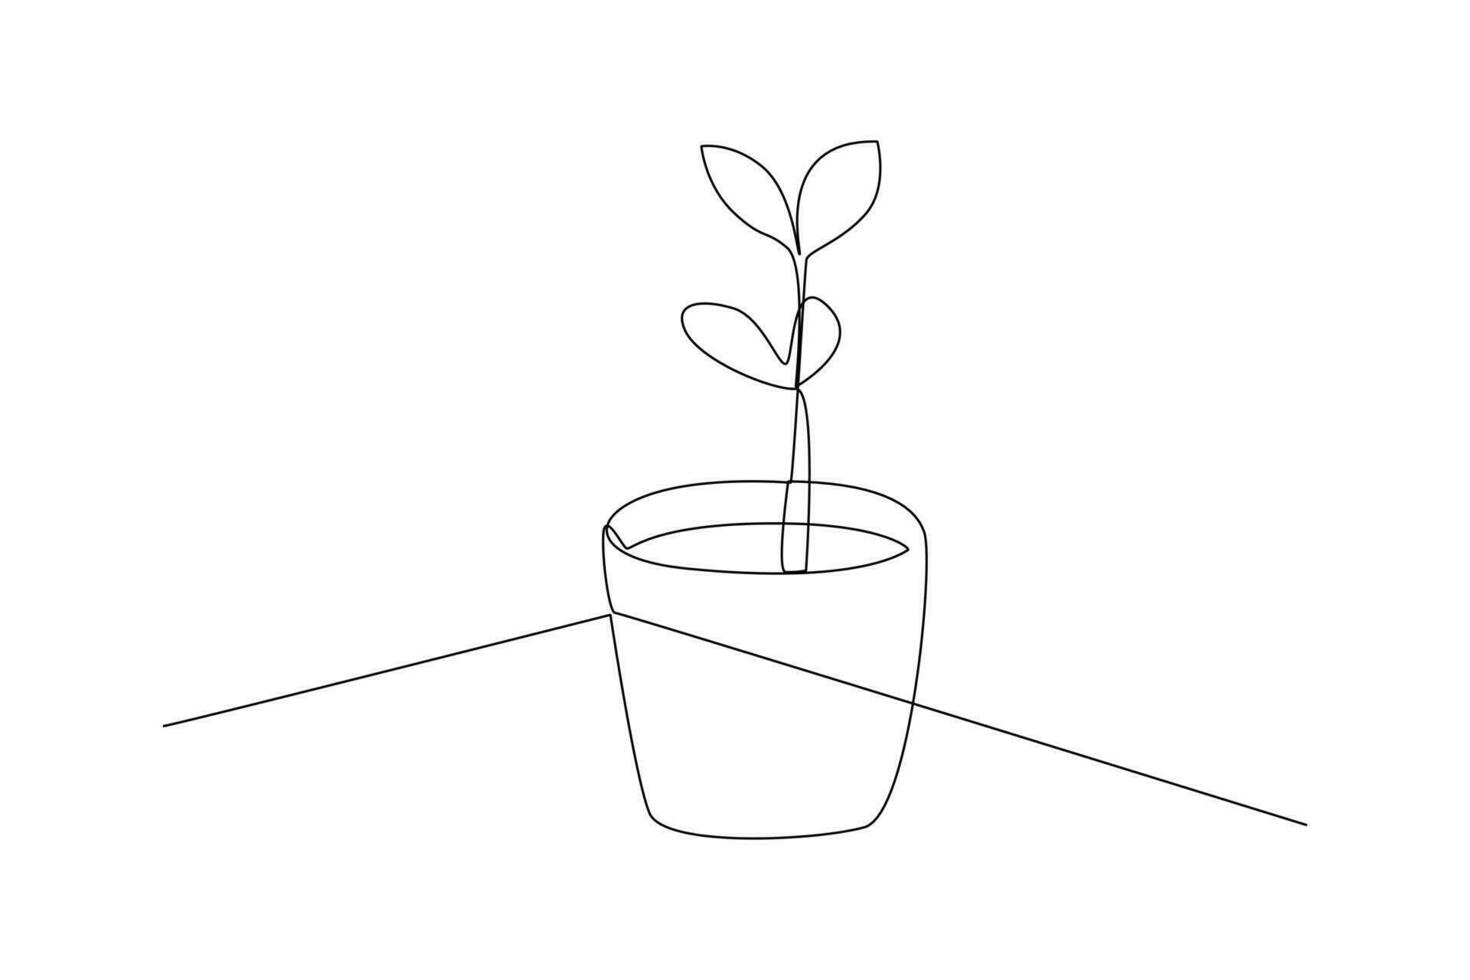 soltero uno línea dibujo plantas y hierbas concepto. continuo línea dibujar diseño gráfico vector ilustración.